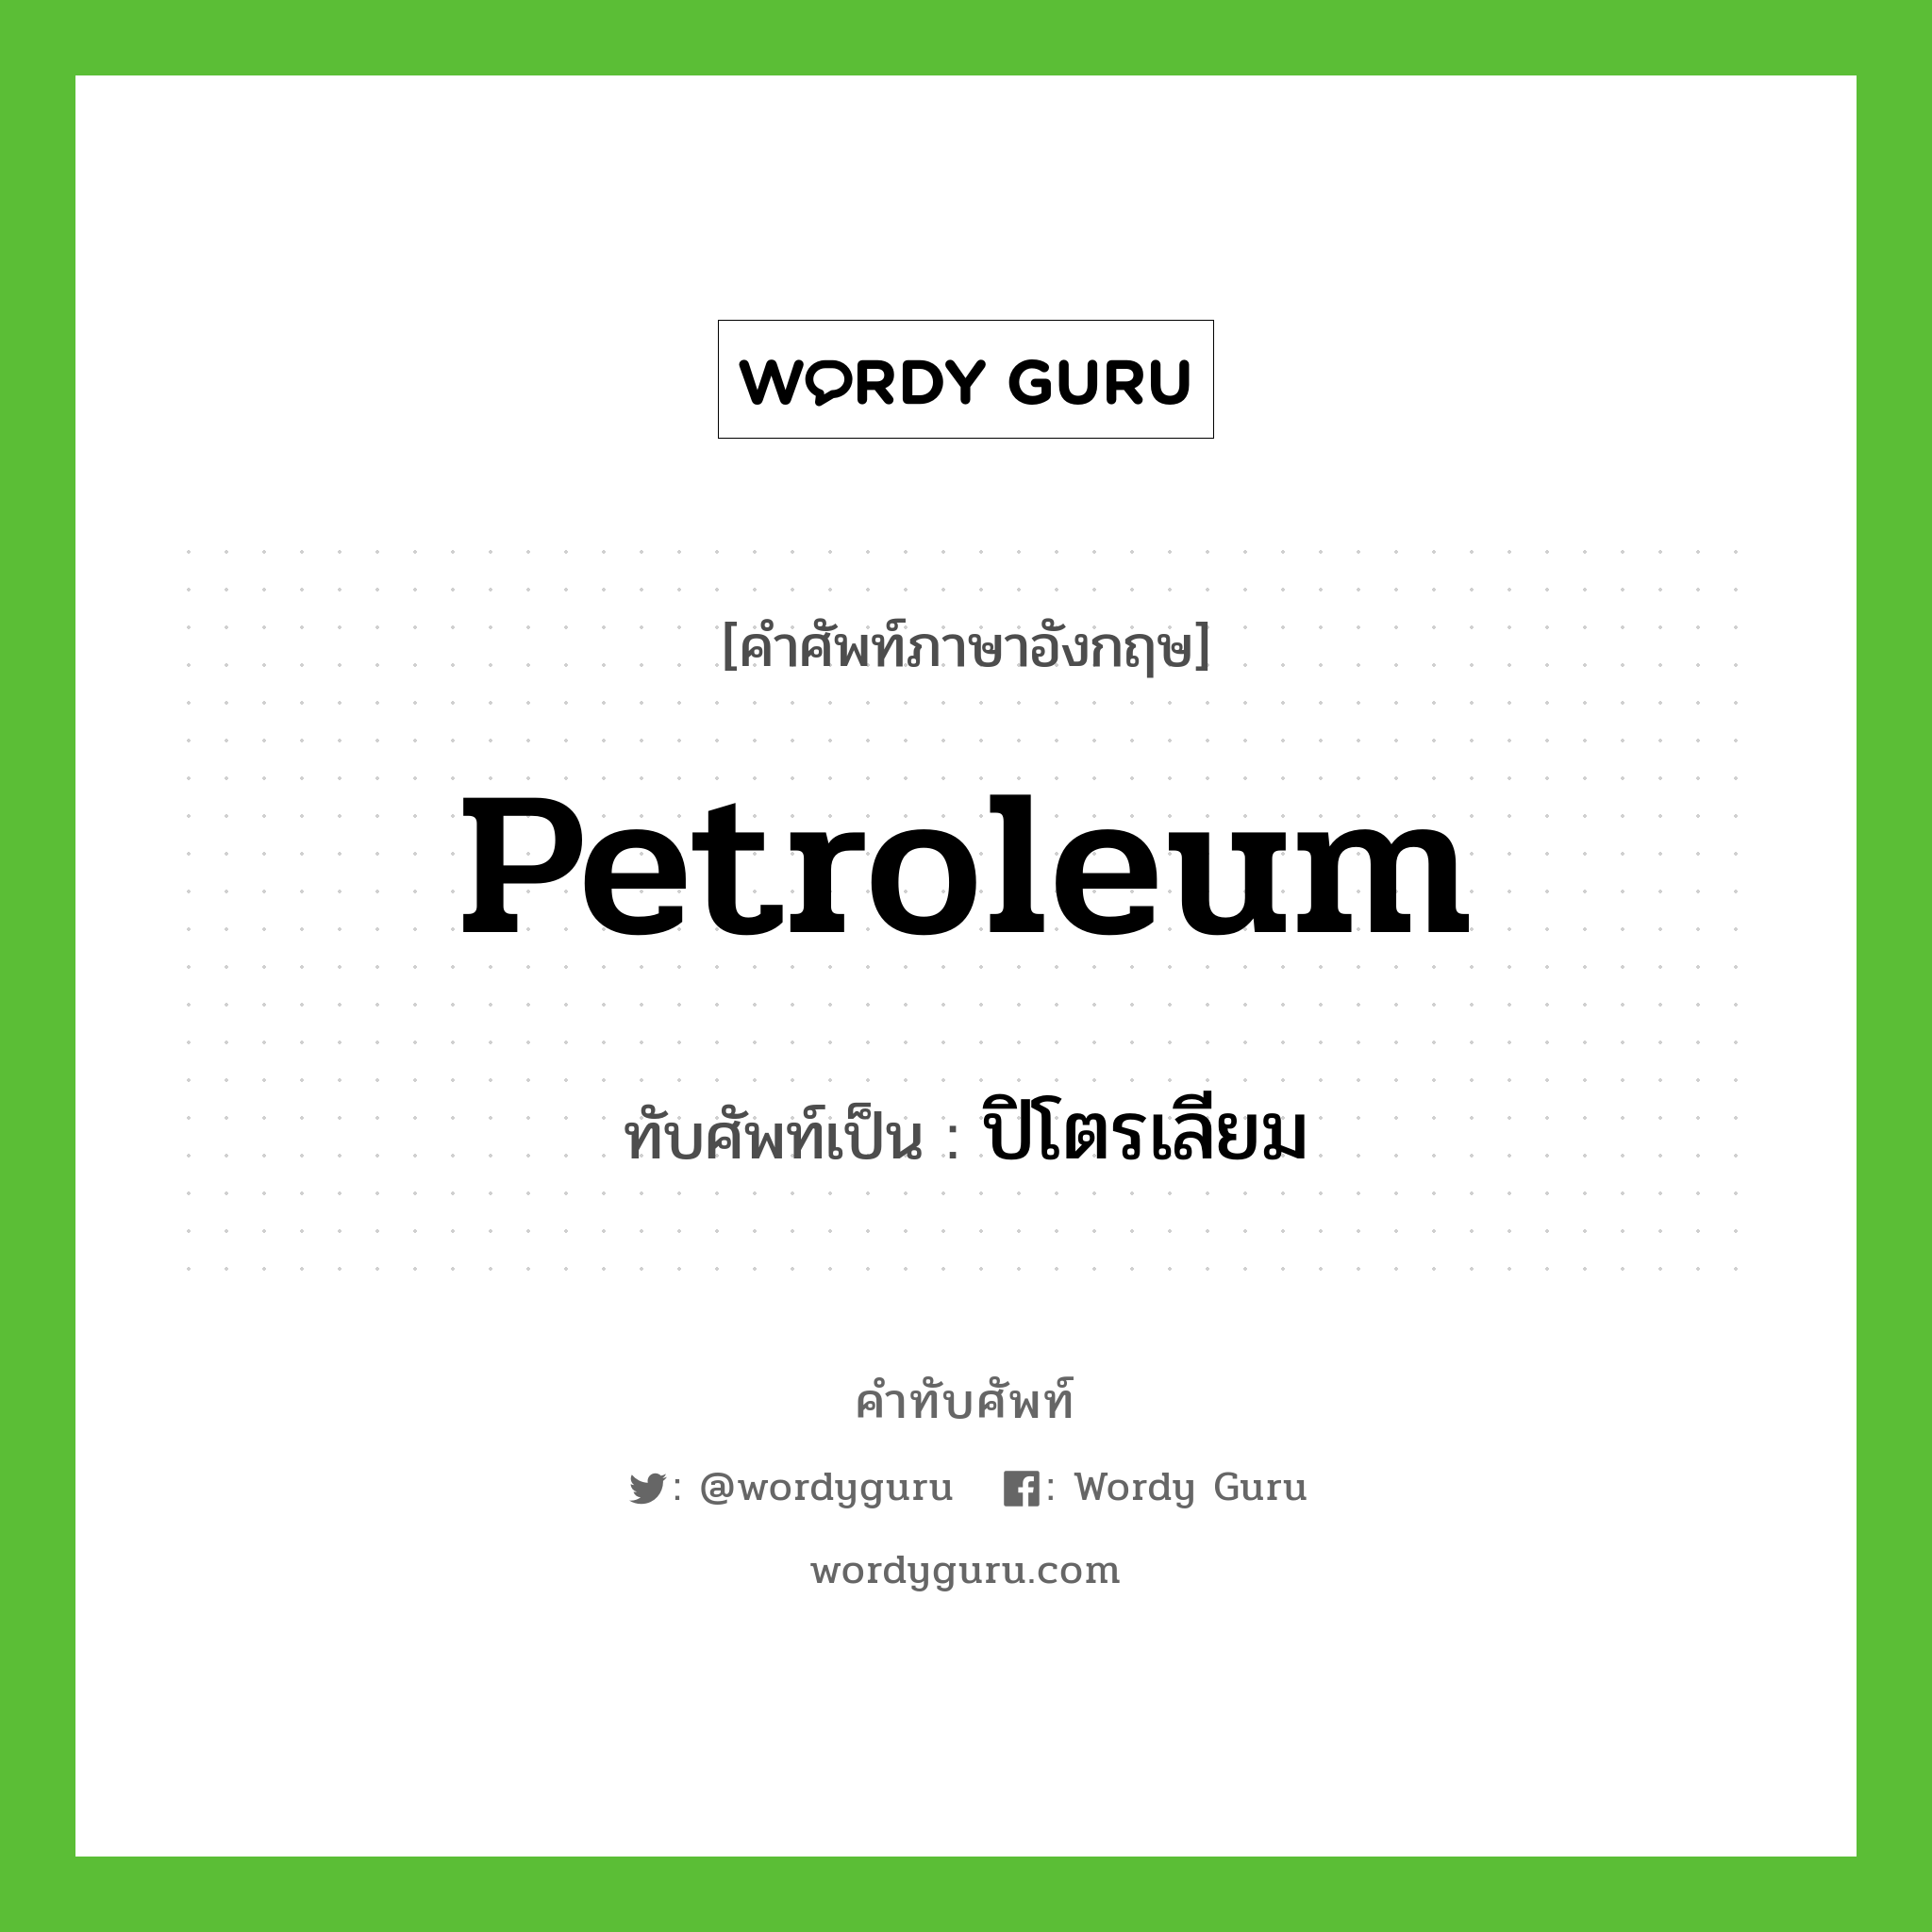 petroleum เขียนเป็นคำไทยว่าอะไร?, คำศัพท์ภาษาอังกฤษ petroleum ทับศัพท์เป็น ปิโตรเลียม